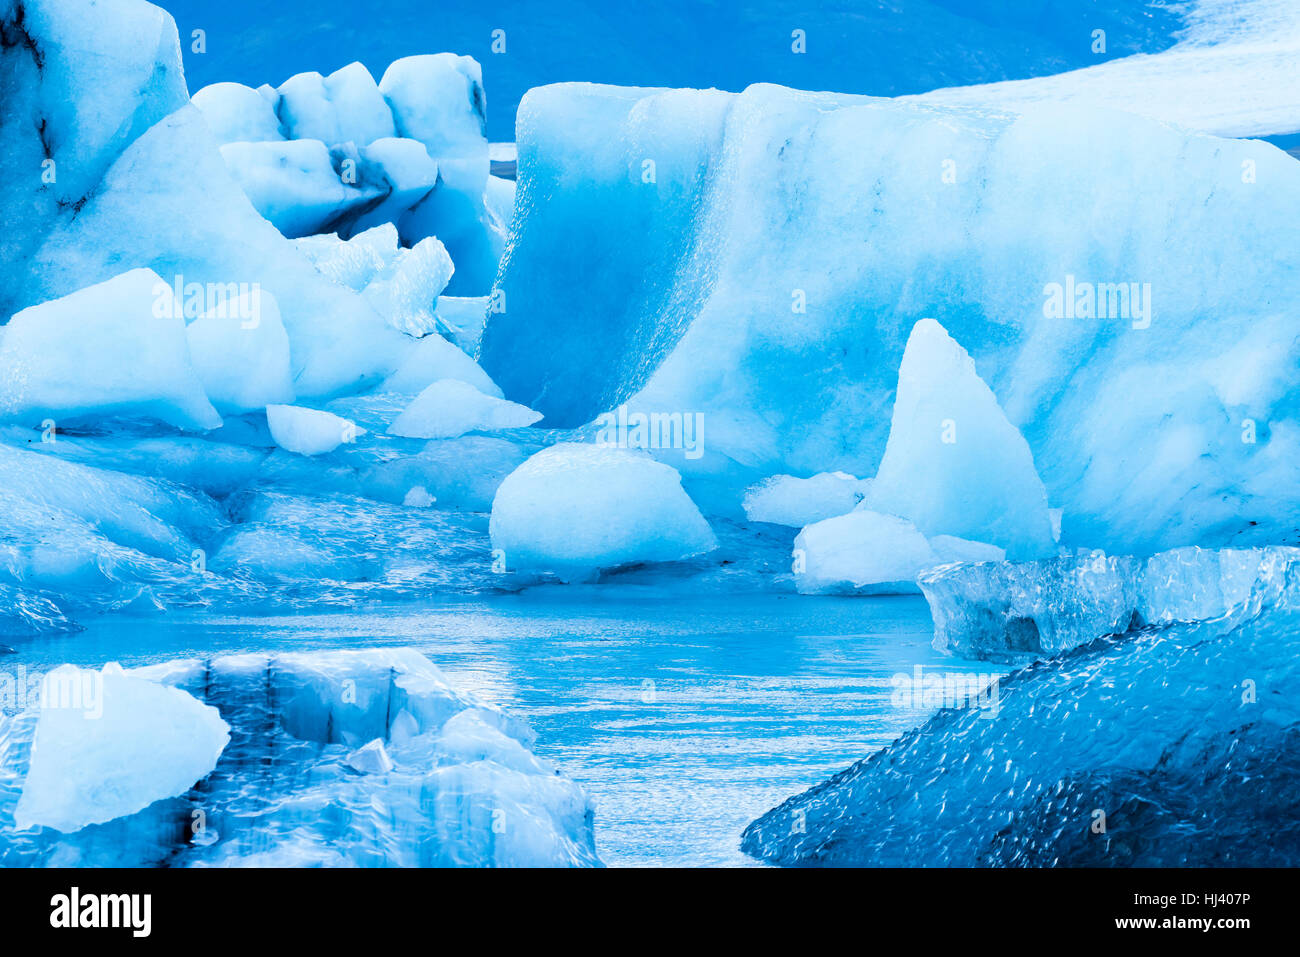 Les icebergs le long de la rive du Jokulsarlon glacial lagoon pendant un temps couvert bleu reste immobile tandis qu'encadrée par l'eau de mer froide. Banque D'Images